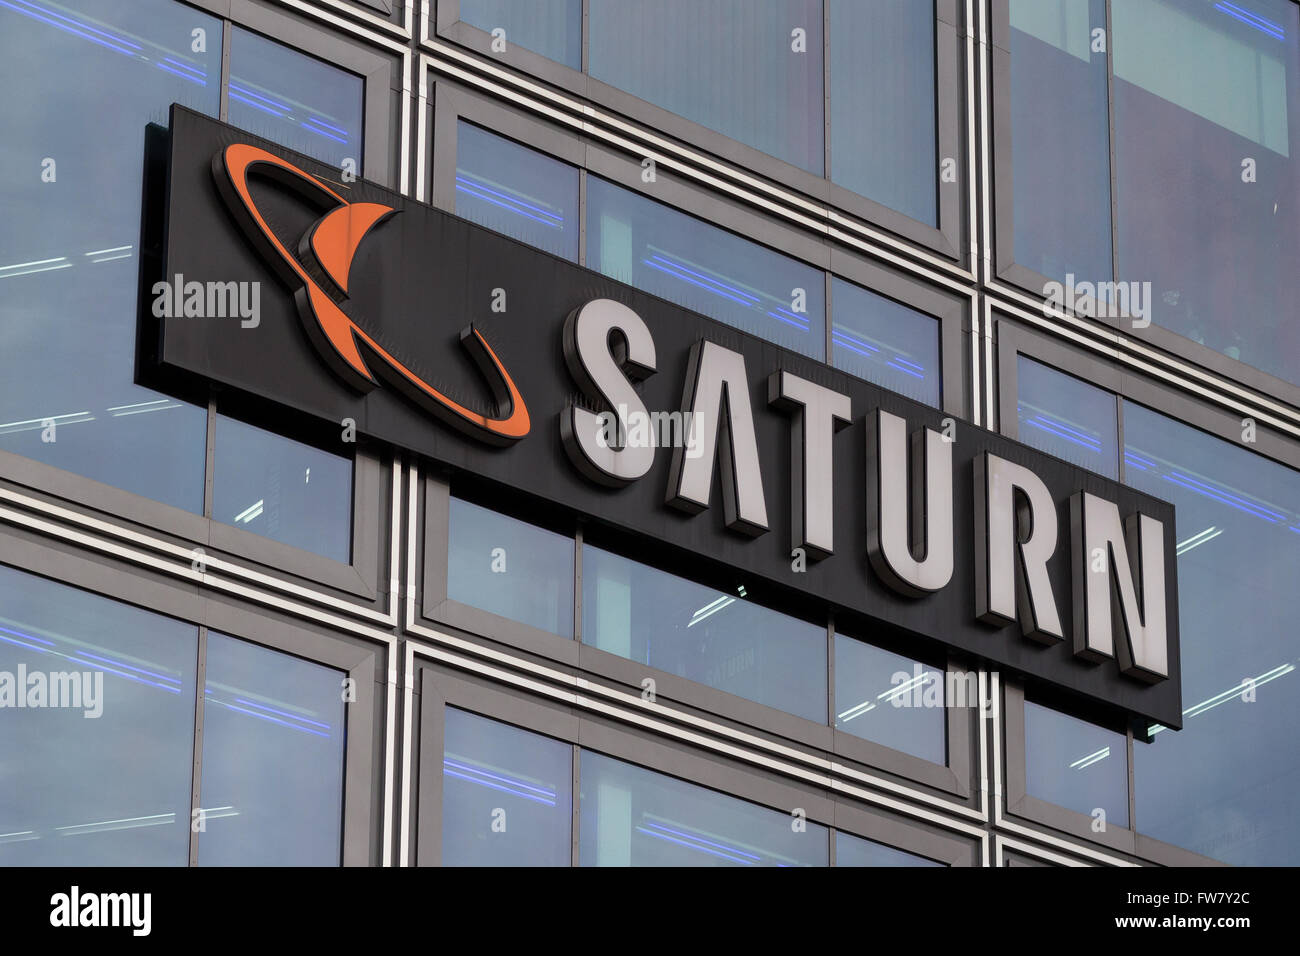 Logotipo de tienda de Saturno. Saturno es una cadena alemana de tiendas de productos electrónicos, se encuentran ahora en Europa varios Foto de stock